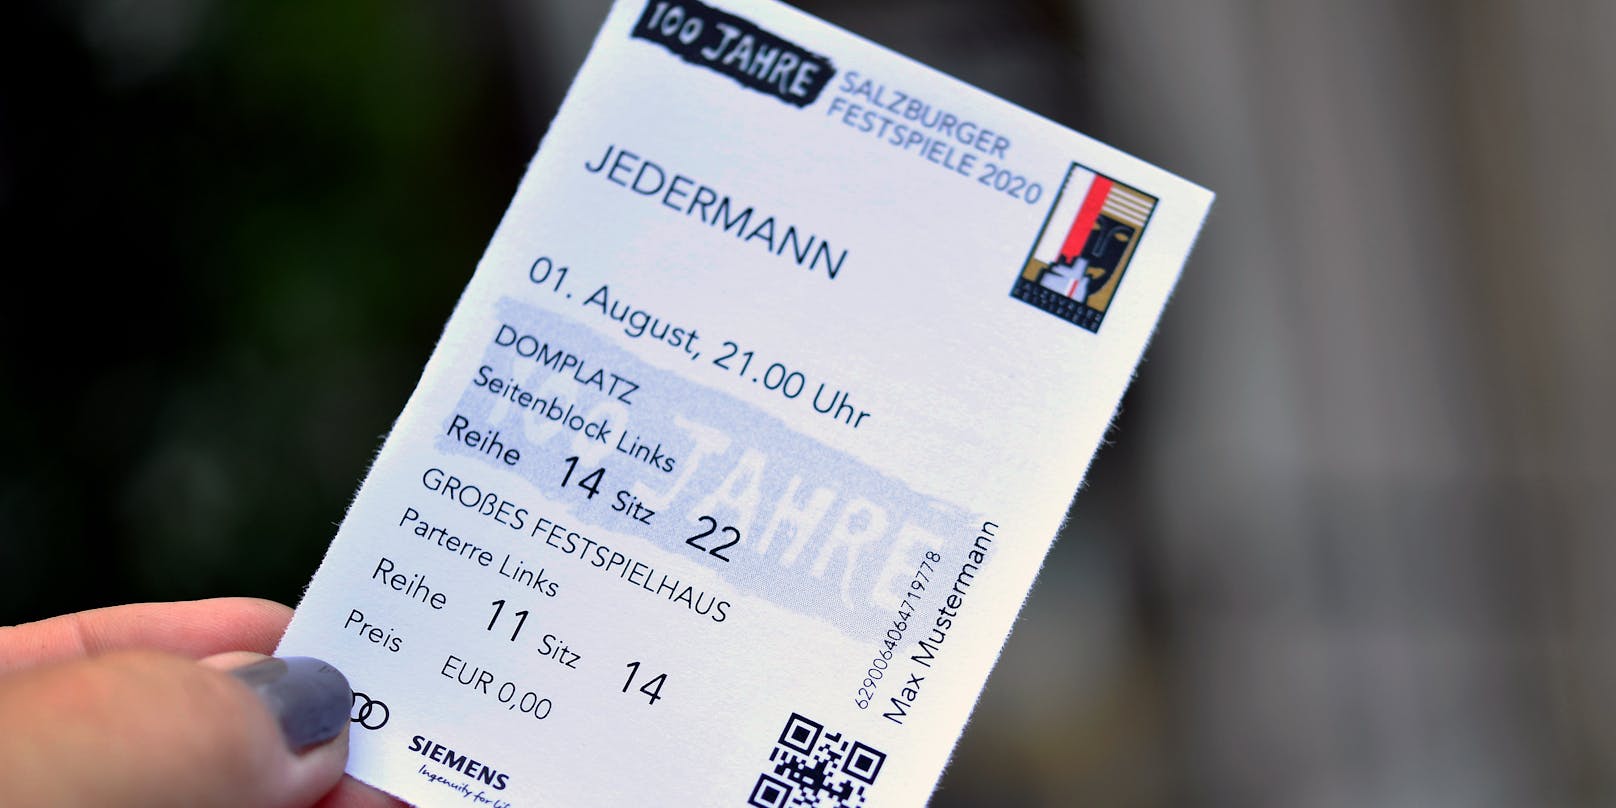 Eine personalisierte Eintrittskarte für die legendäre "Jedermann" Aufführung.